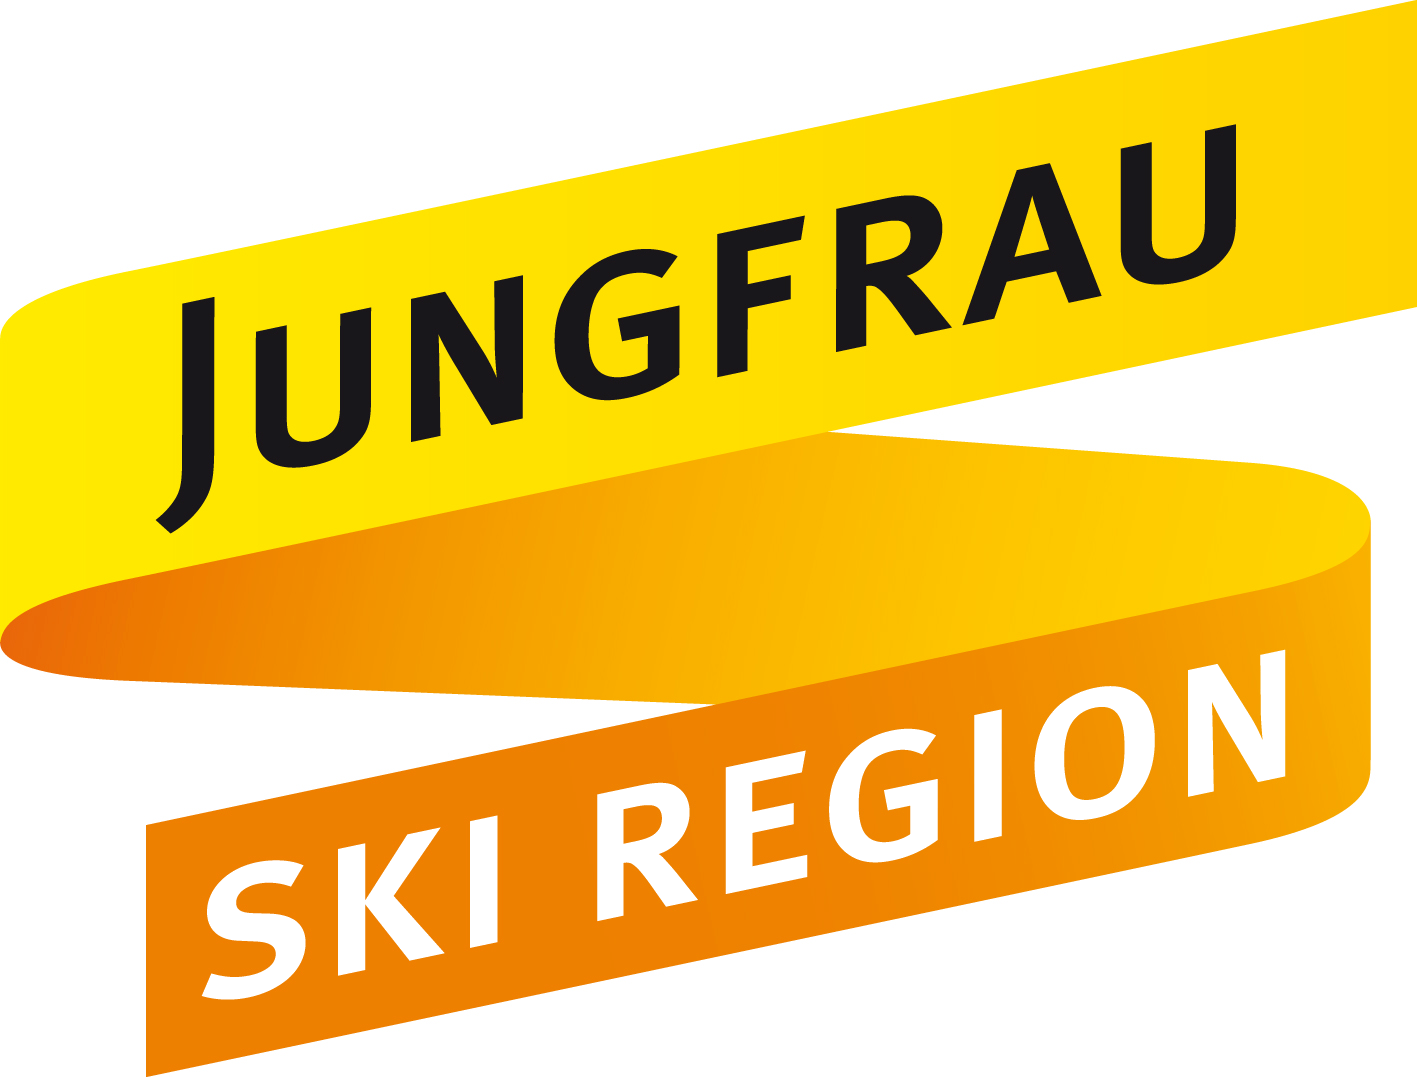 Grindelwald-Wengen/Männlichen-Kleine Scheidegg/Jungfrau-Region - Logo